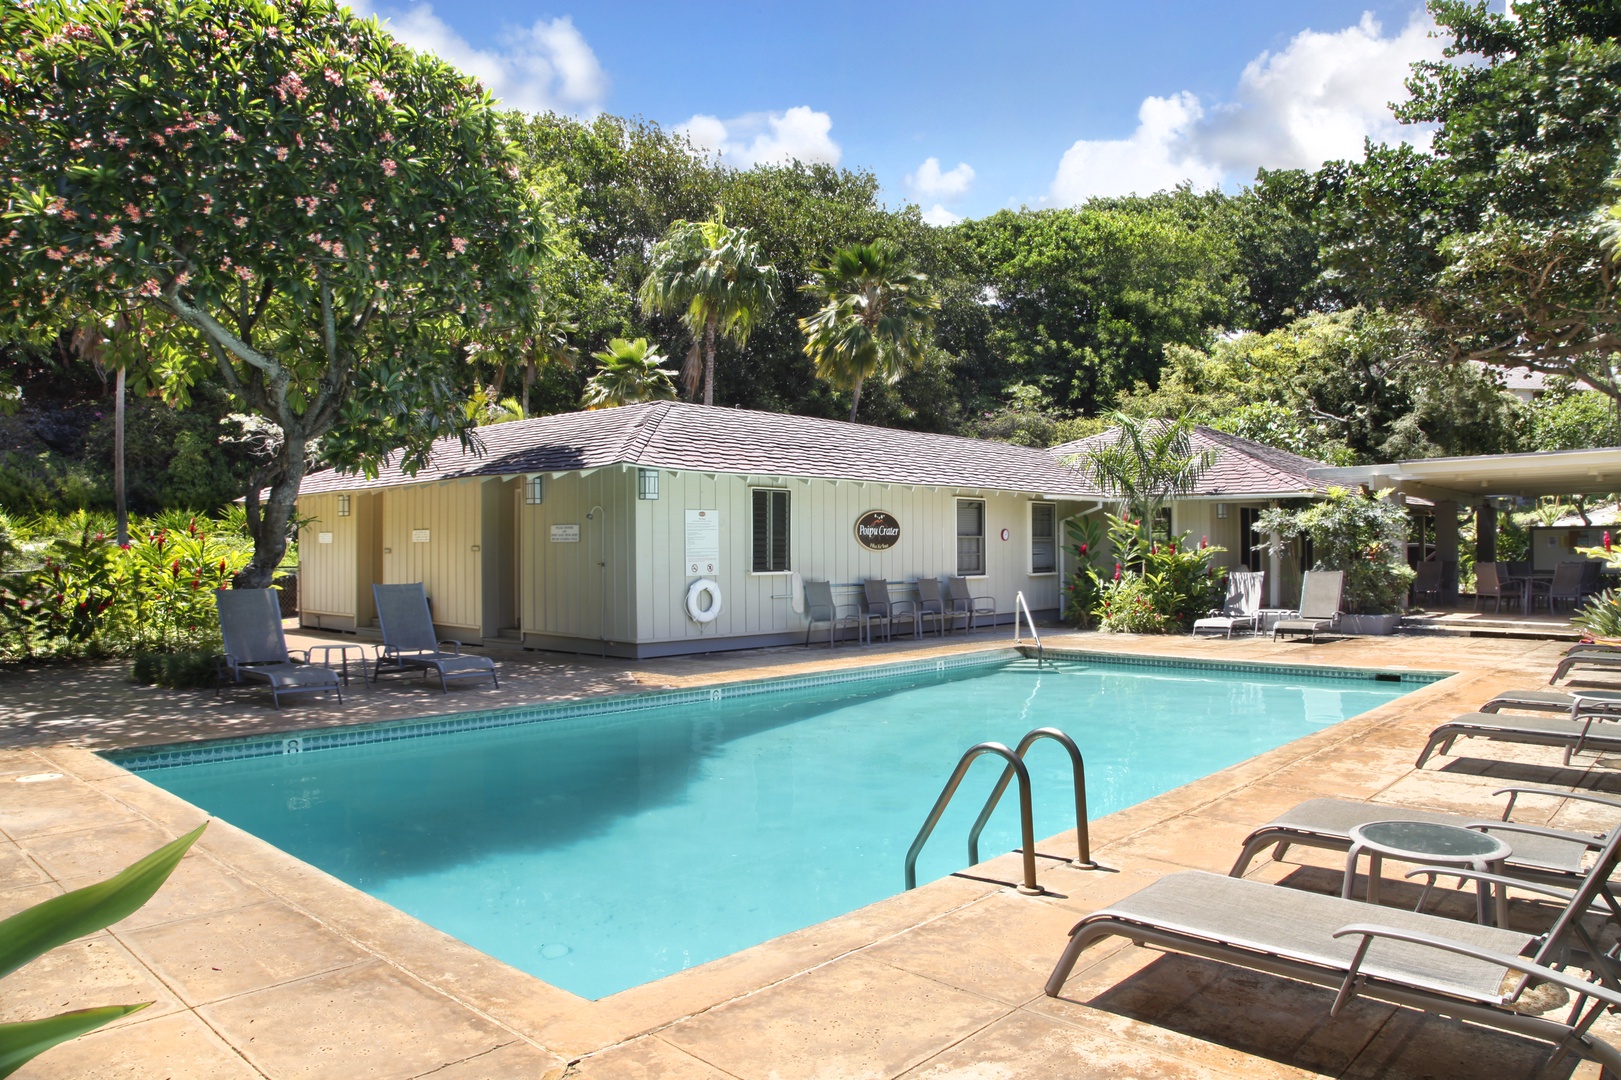 Koloa Vacation Rentals, Kauai Birdsong at Poipu Crater - Take a dip and enjoy the community pool.